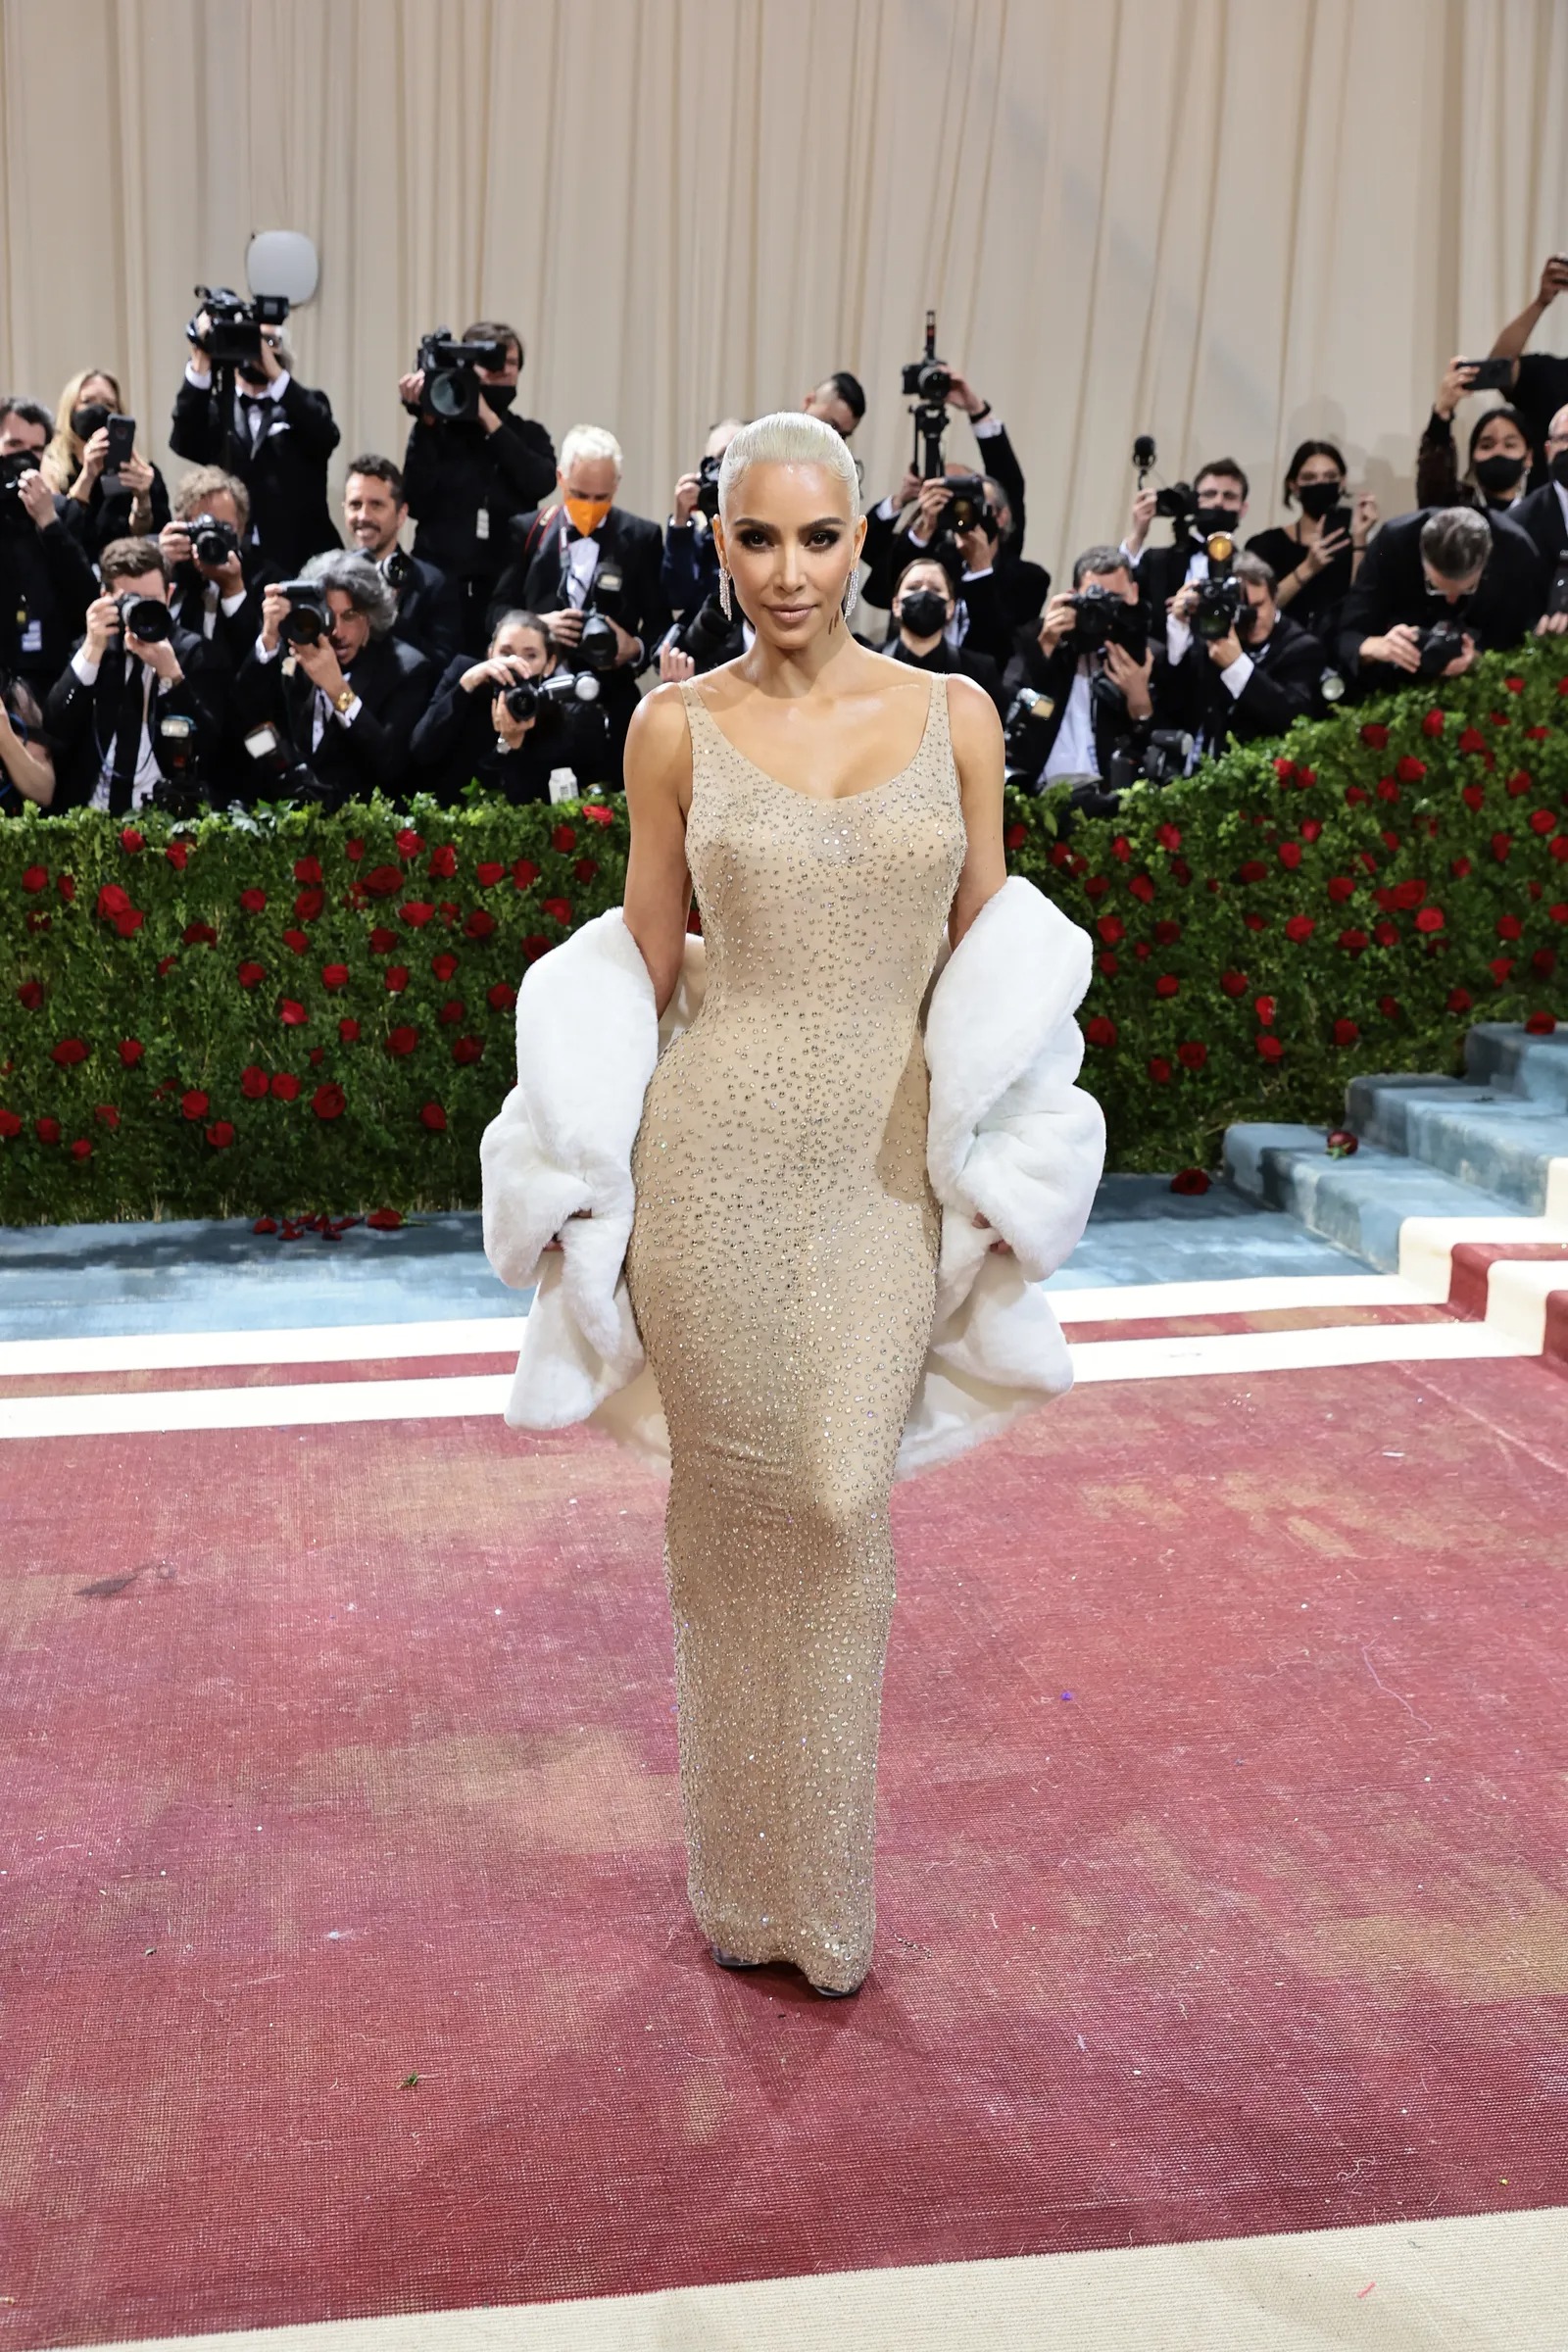 kim k met gala marilyn credit Getty Images - Chiếc váy 60 năm tuổi của Marilyn Monroe đã hỏng, ai tiếp tay cho Kim Kardashian?